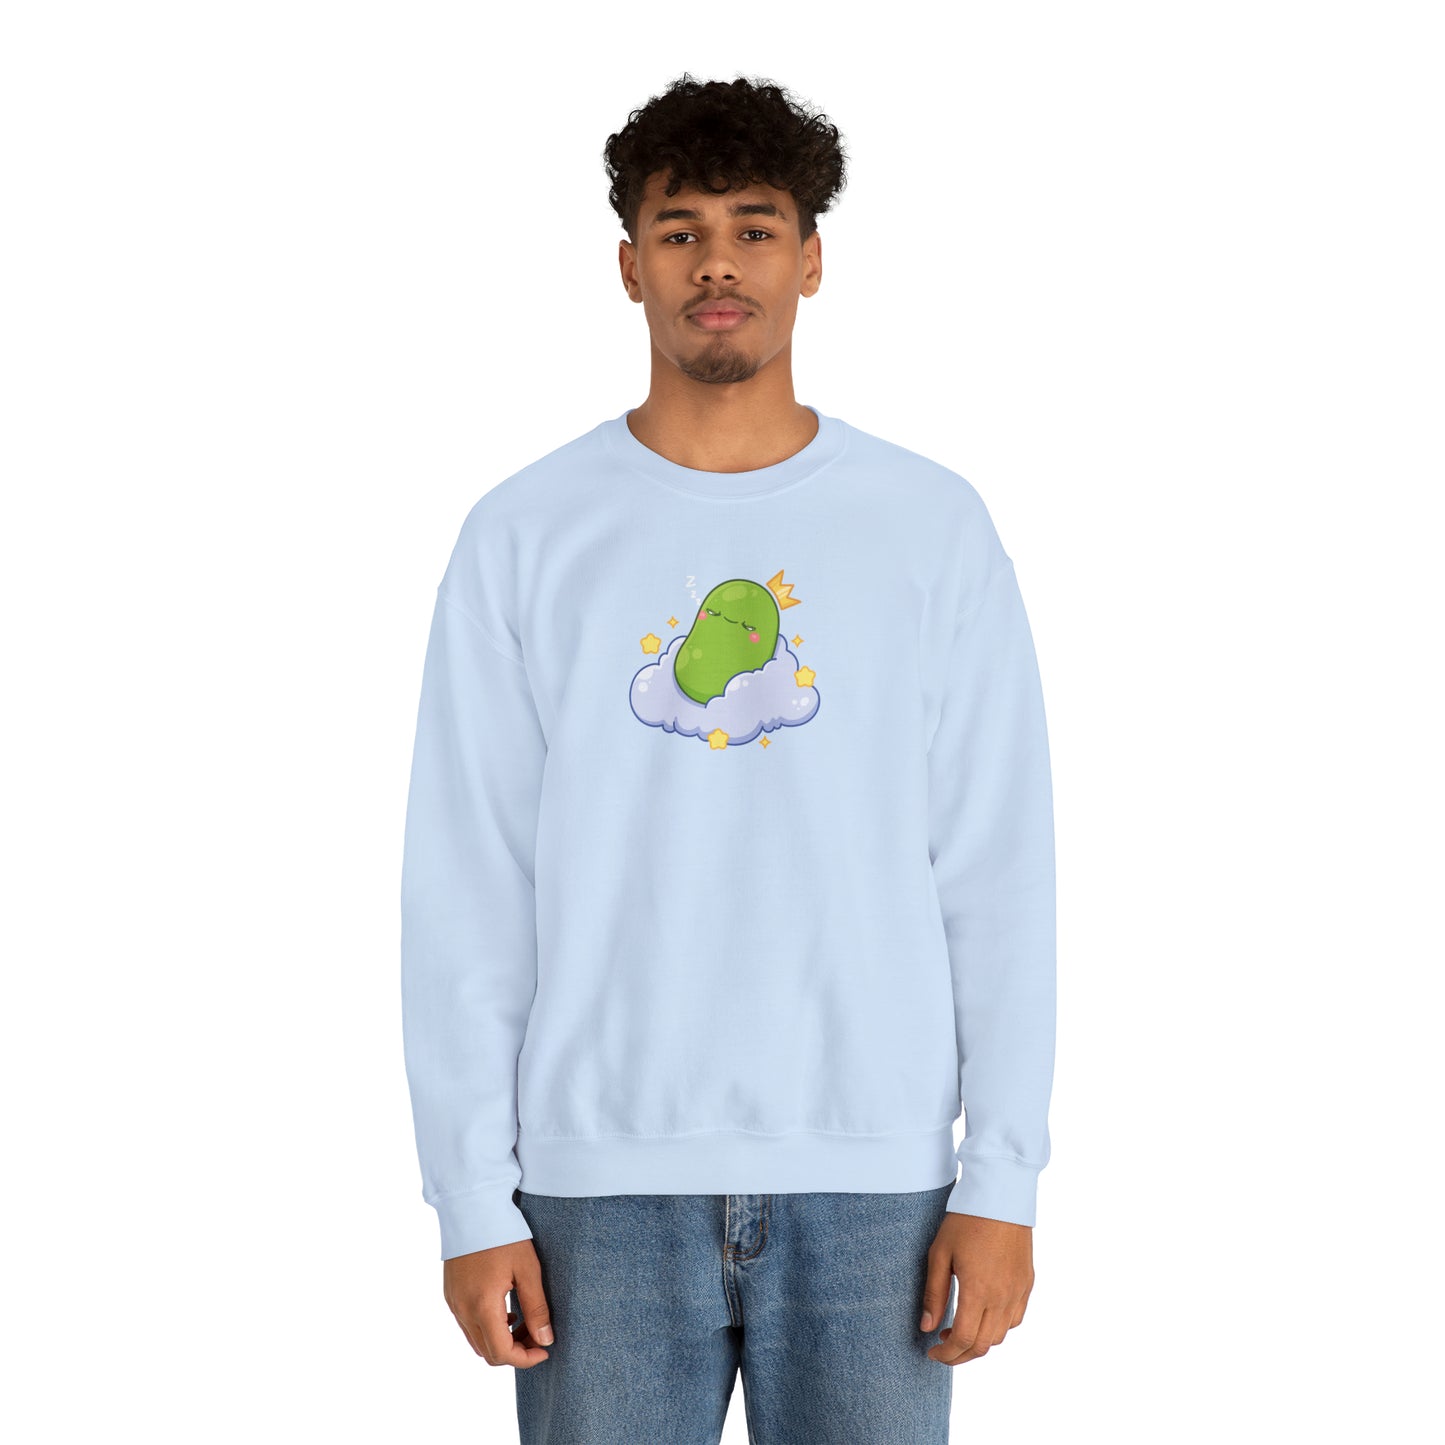 Sleeping Bean Sweatshirt